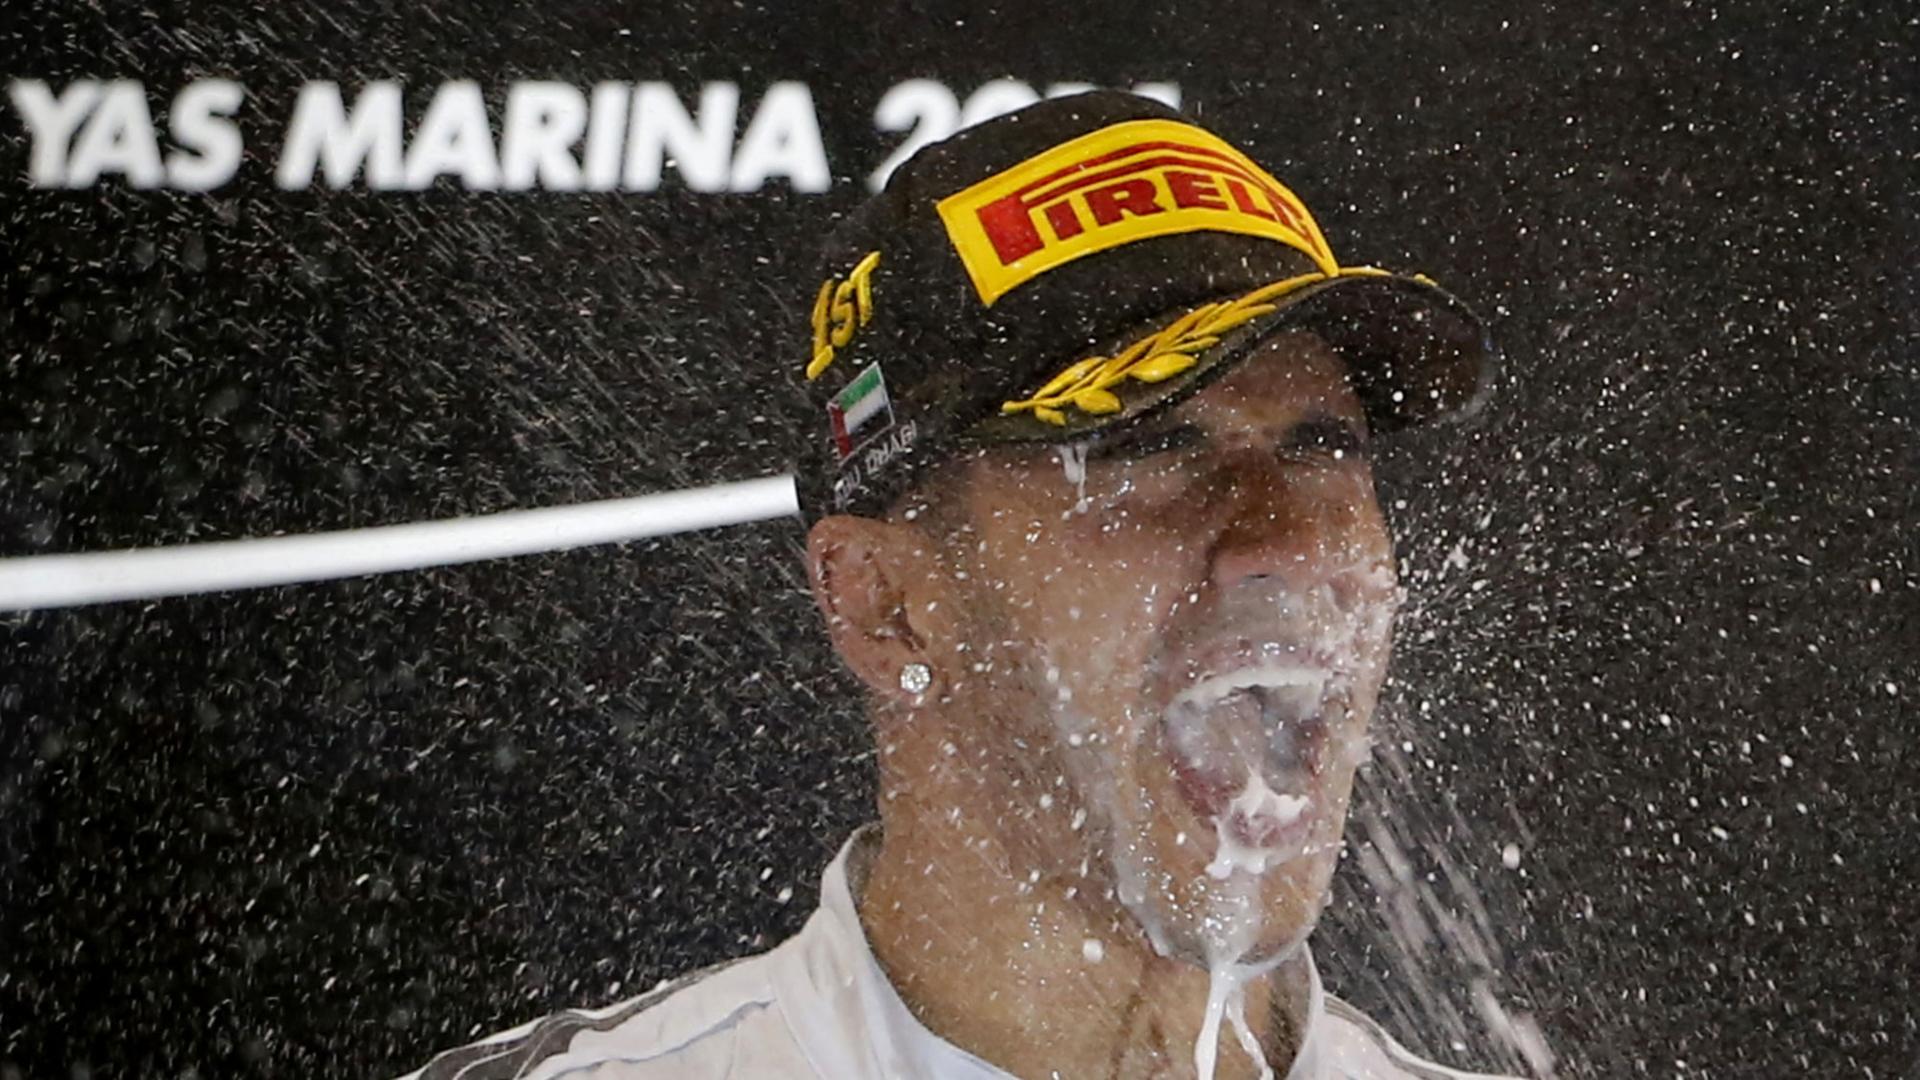 Mercedes-AMG-Fahrer Lewis Hamilton feiert seinen Formel-1-Weltmeistertitel auf dem Podium an der Rennstrecke in Abu Dhabi.